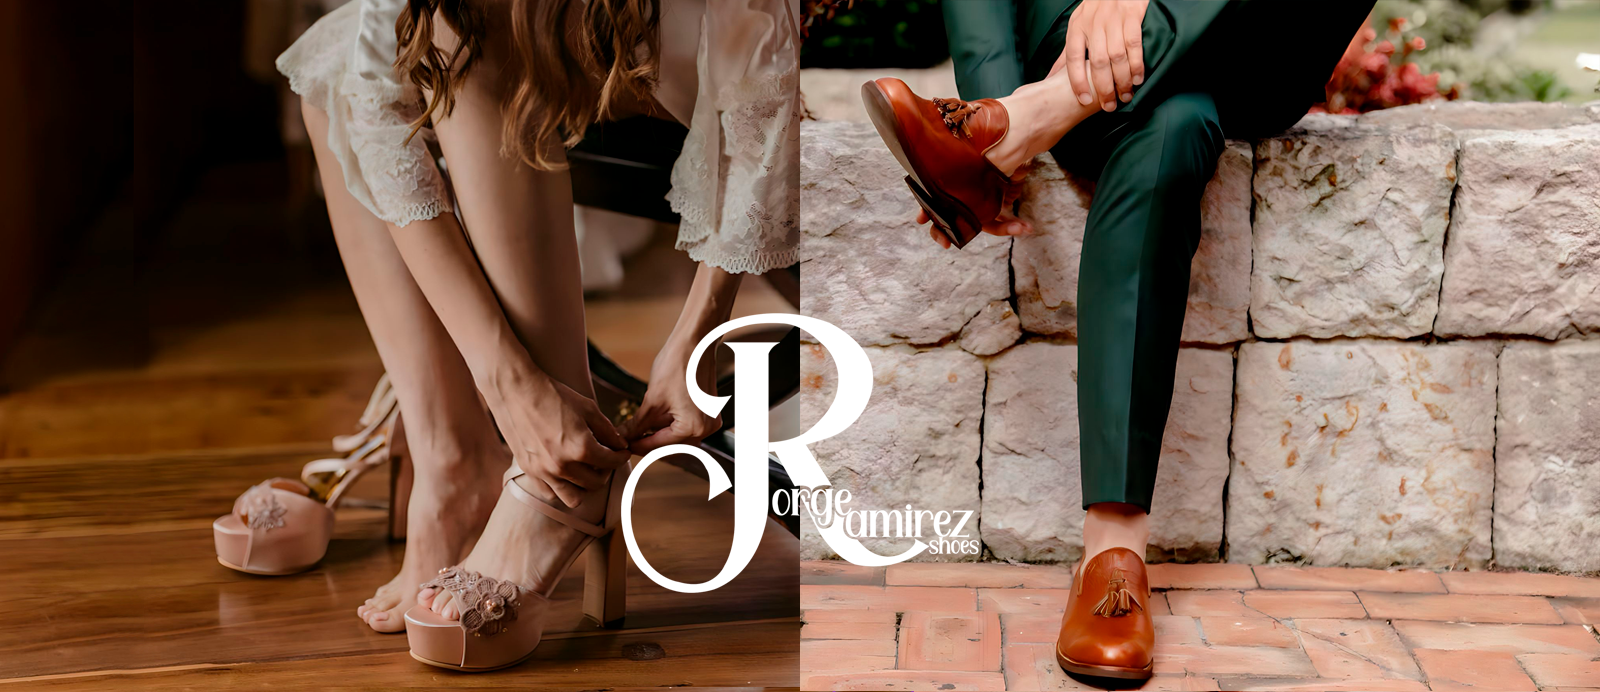 Zapato y calzado para novia y novio